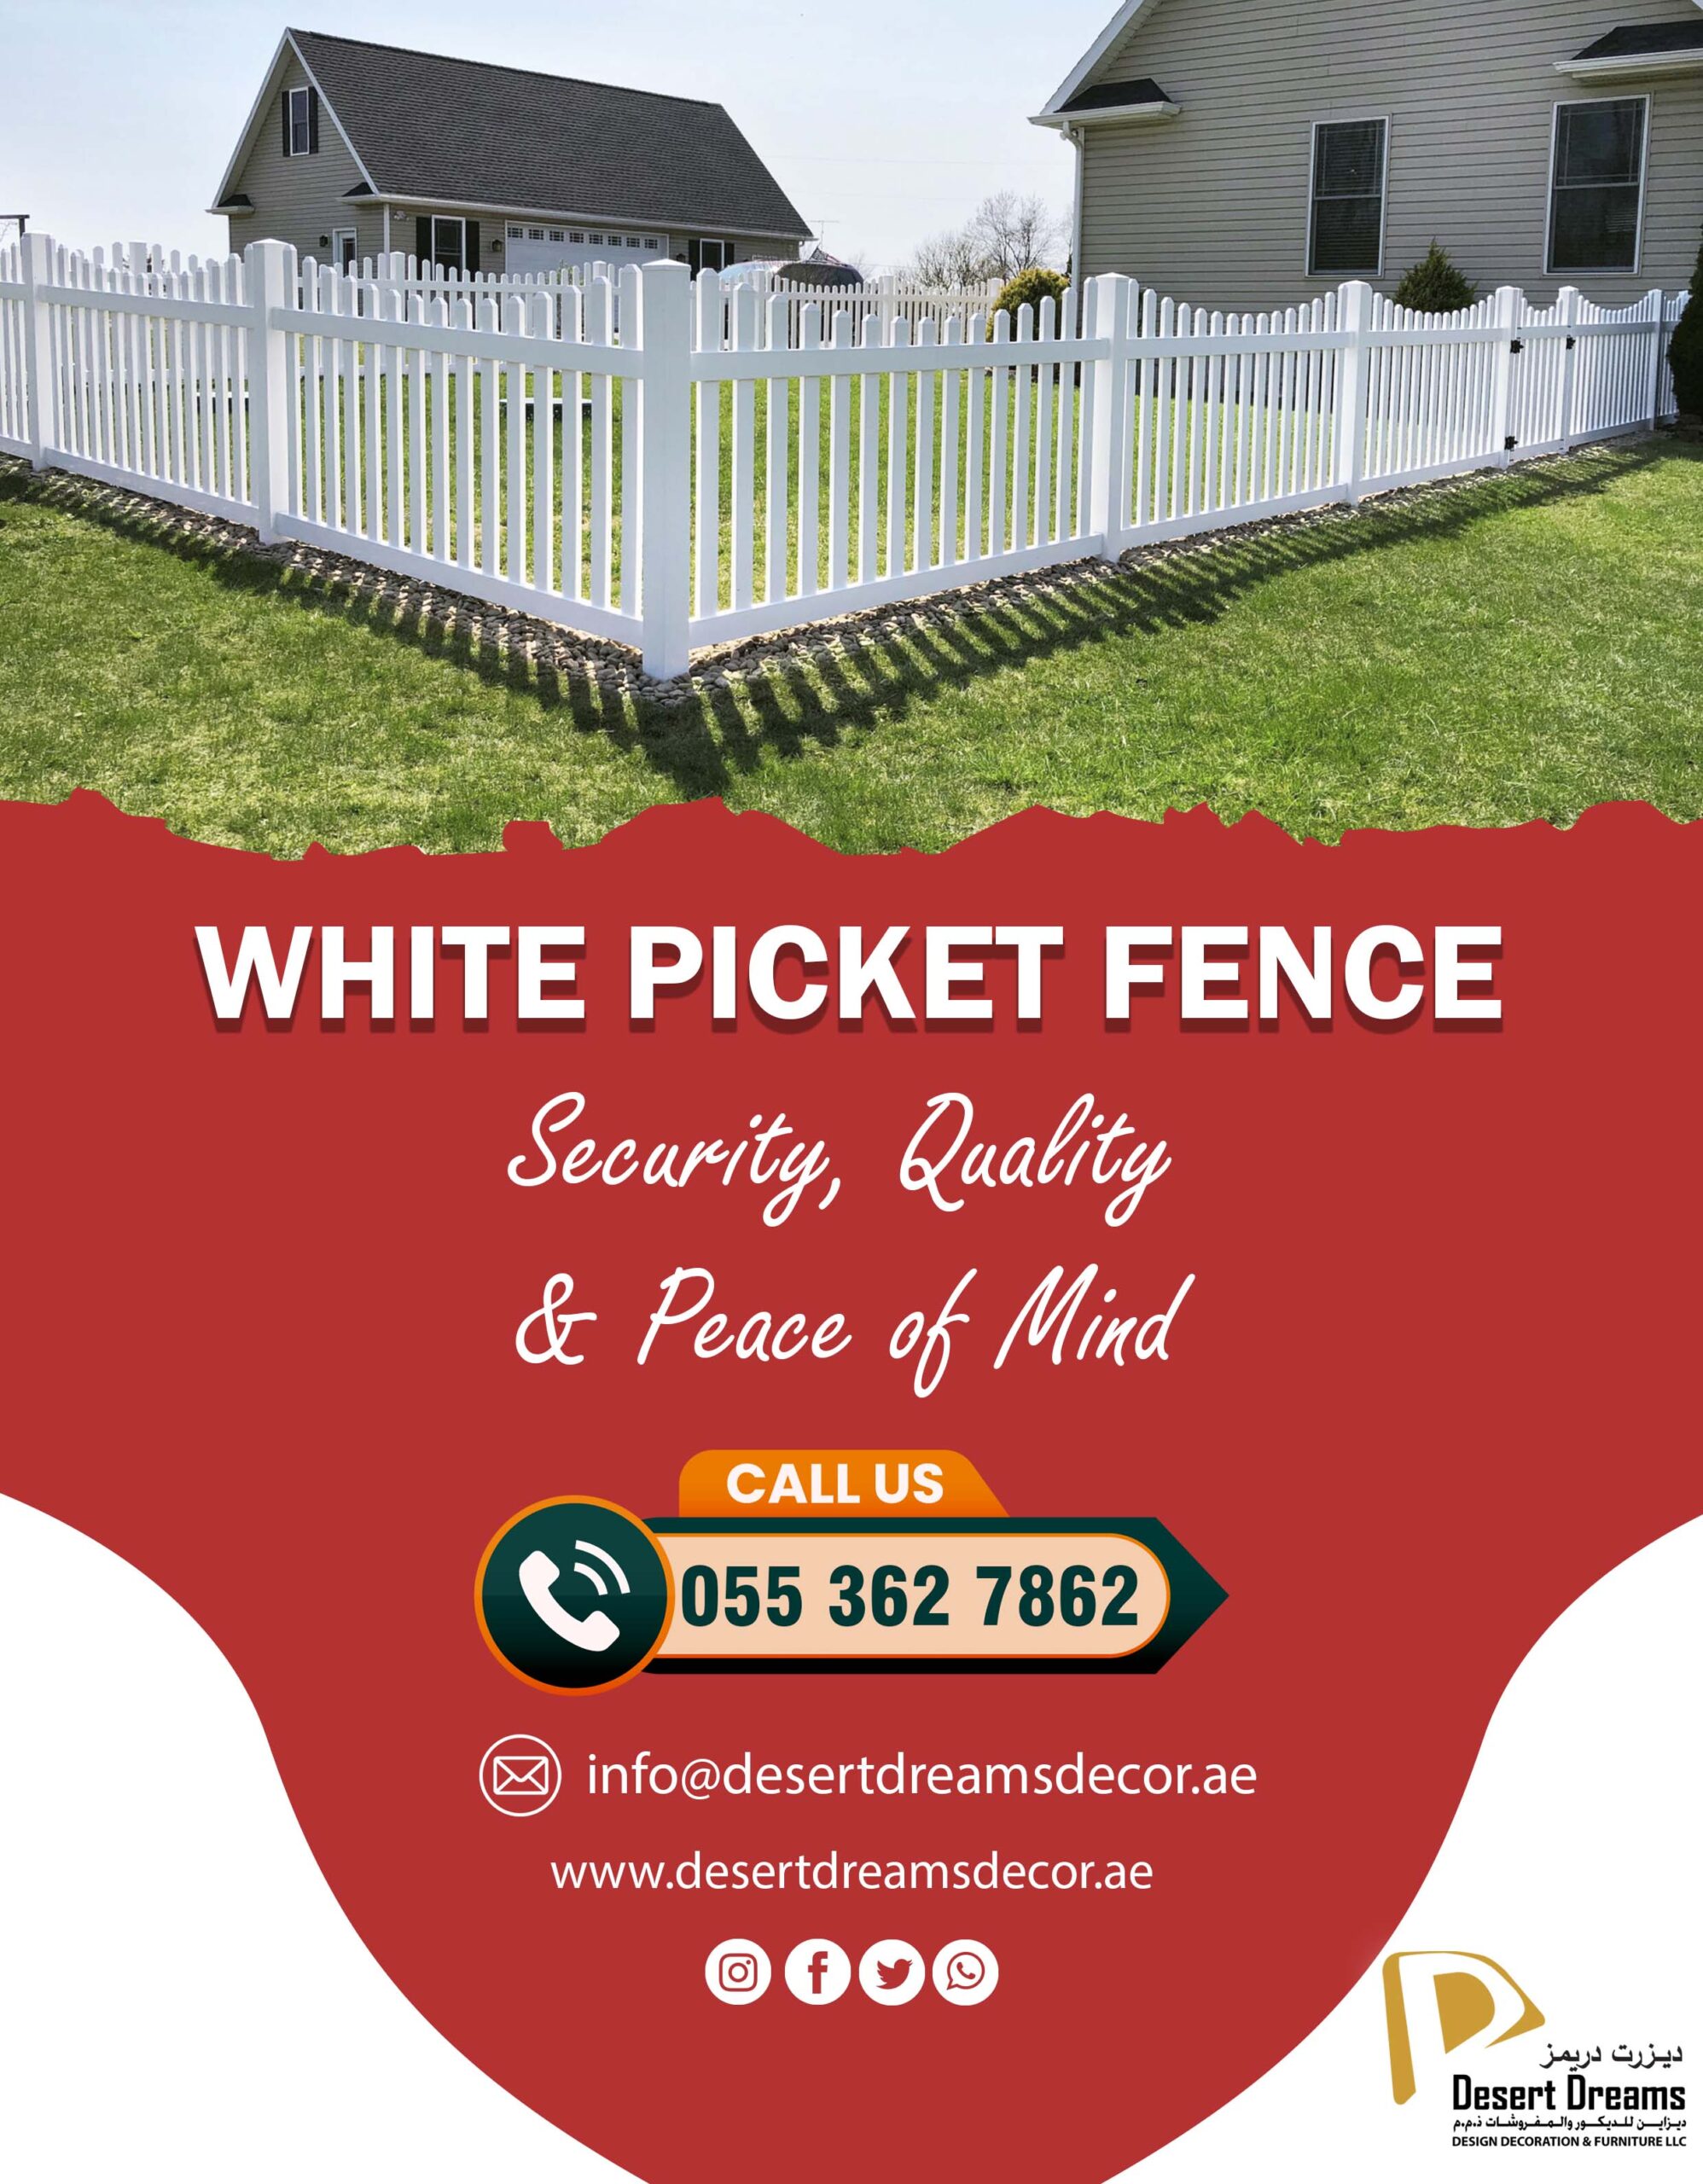 Wooden Slatted Fence Uae_White Picket Fence Uae_Natural Wood Fence Uae (3).jpg